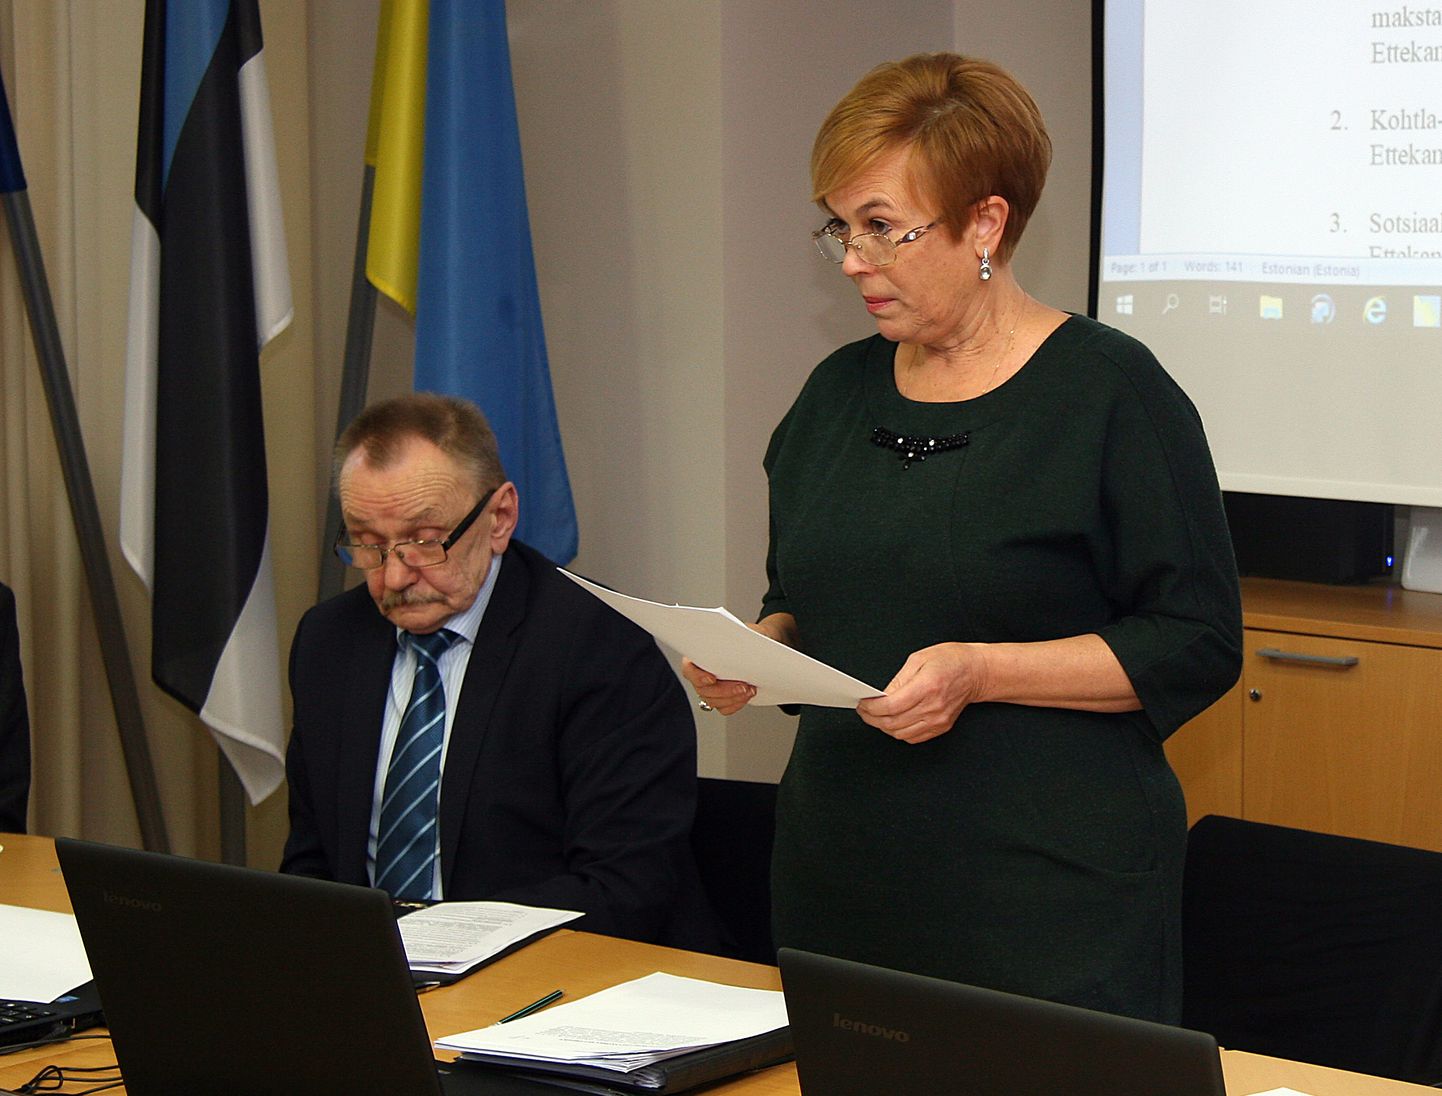 У председателя Кохтла-Ярвеского горсобрания Рийны Ивановой сохранился должностной оклад в размере 4320 евро.